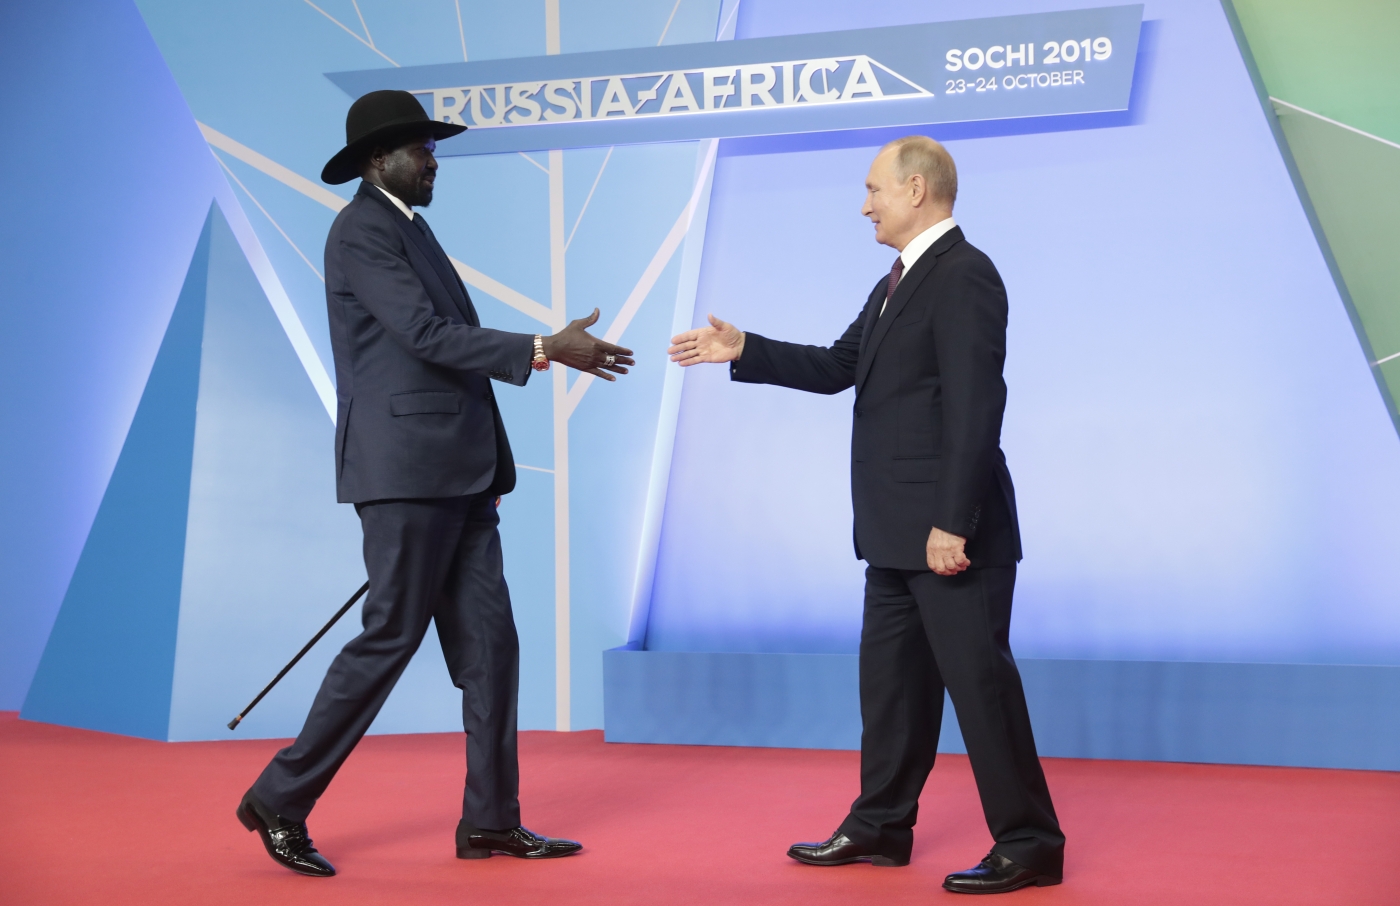 Le président russe Vladimir Poutine salue le président du Sud-Soudan Salva Kiir Mayardit lors de la cérémonie officielle d’accueil des chefs d’État et de gouvernement participant au sommet Russie-Afrique de 2019, à Sochi, le 23 octobre 2019 (AFP)